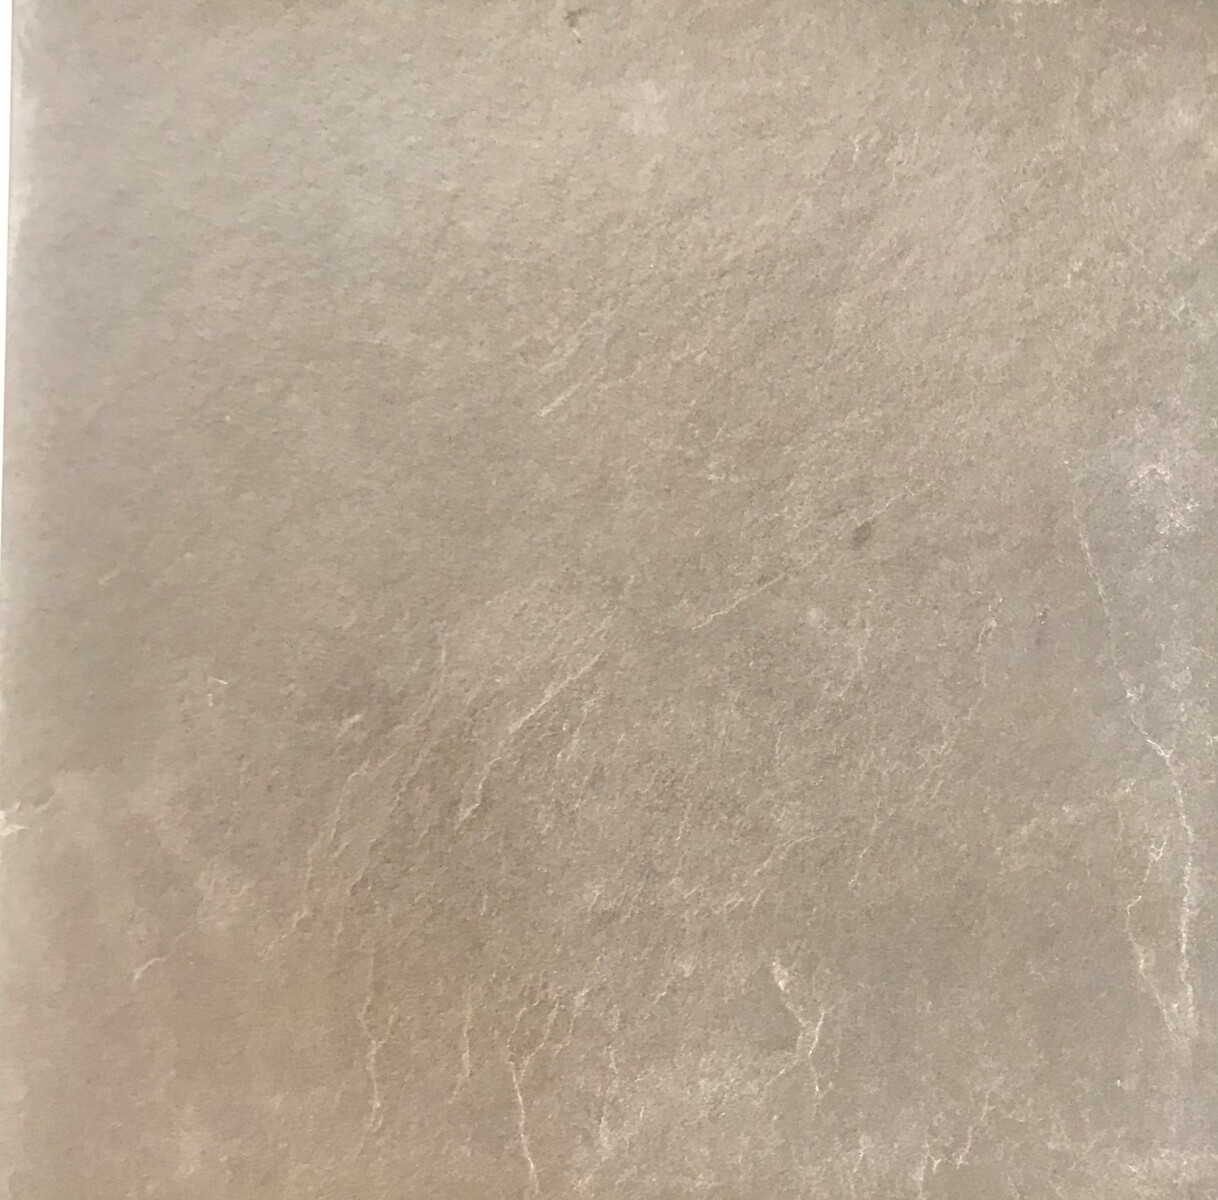 Piedra Pizarra Ardosia Vino 40 x 40 cm - 0.96m2 